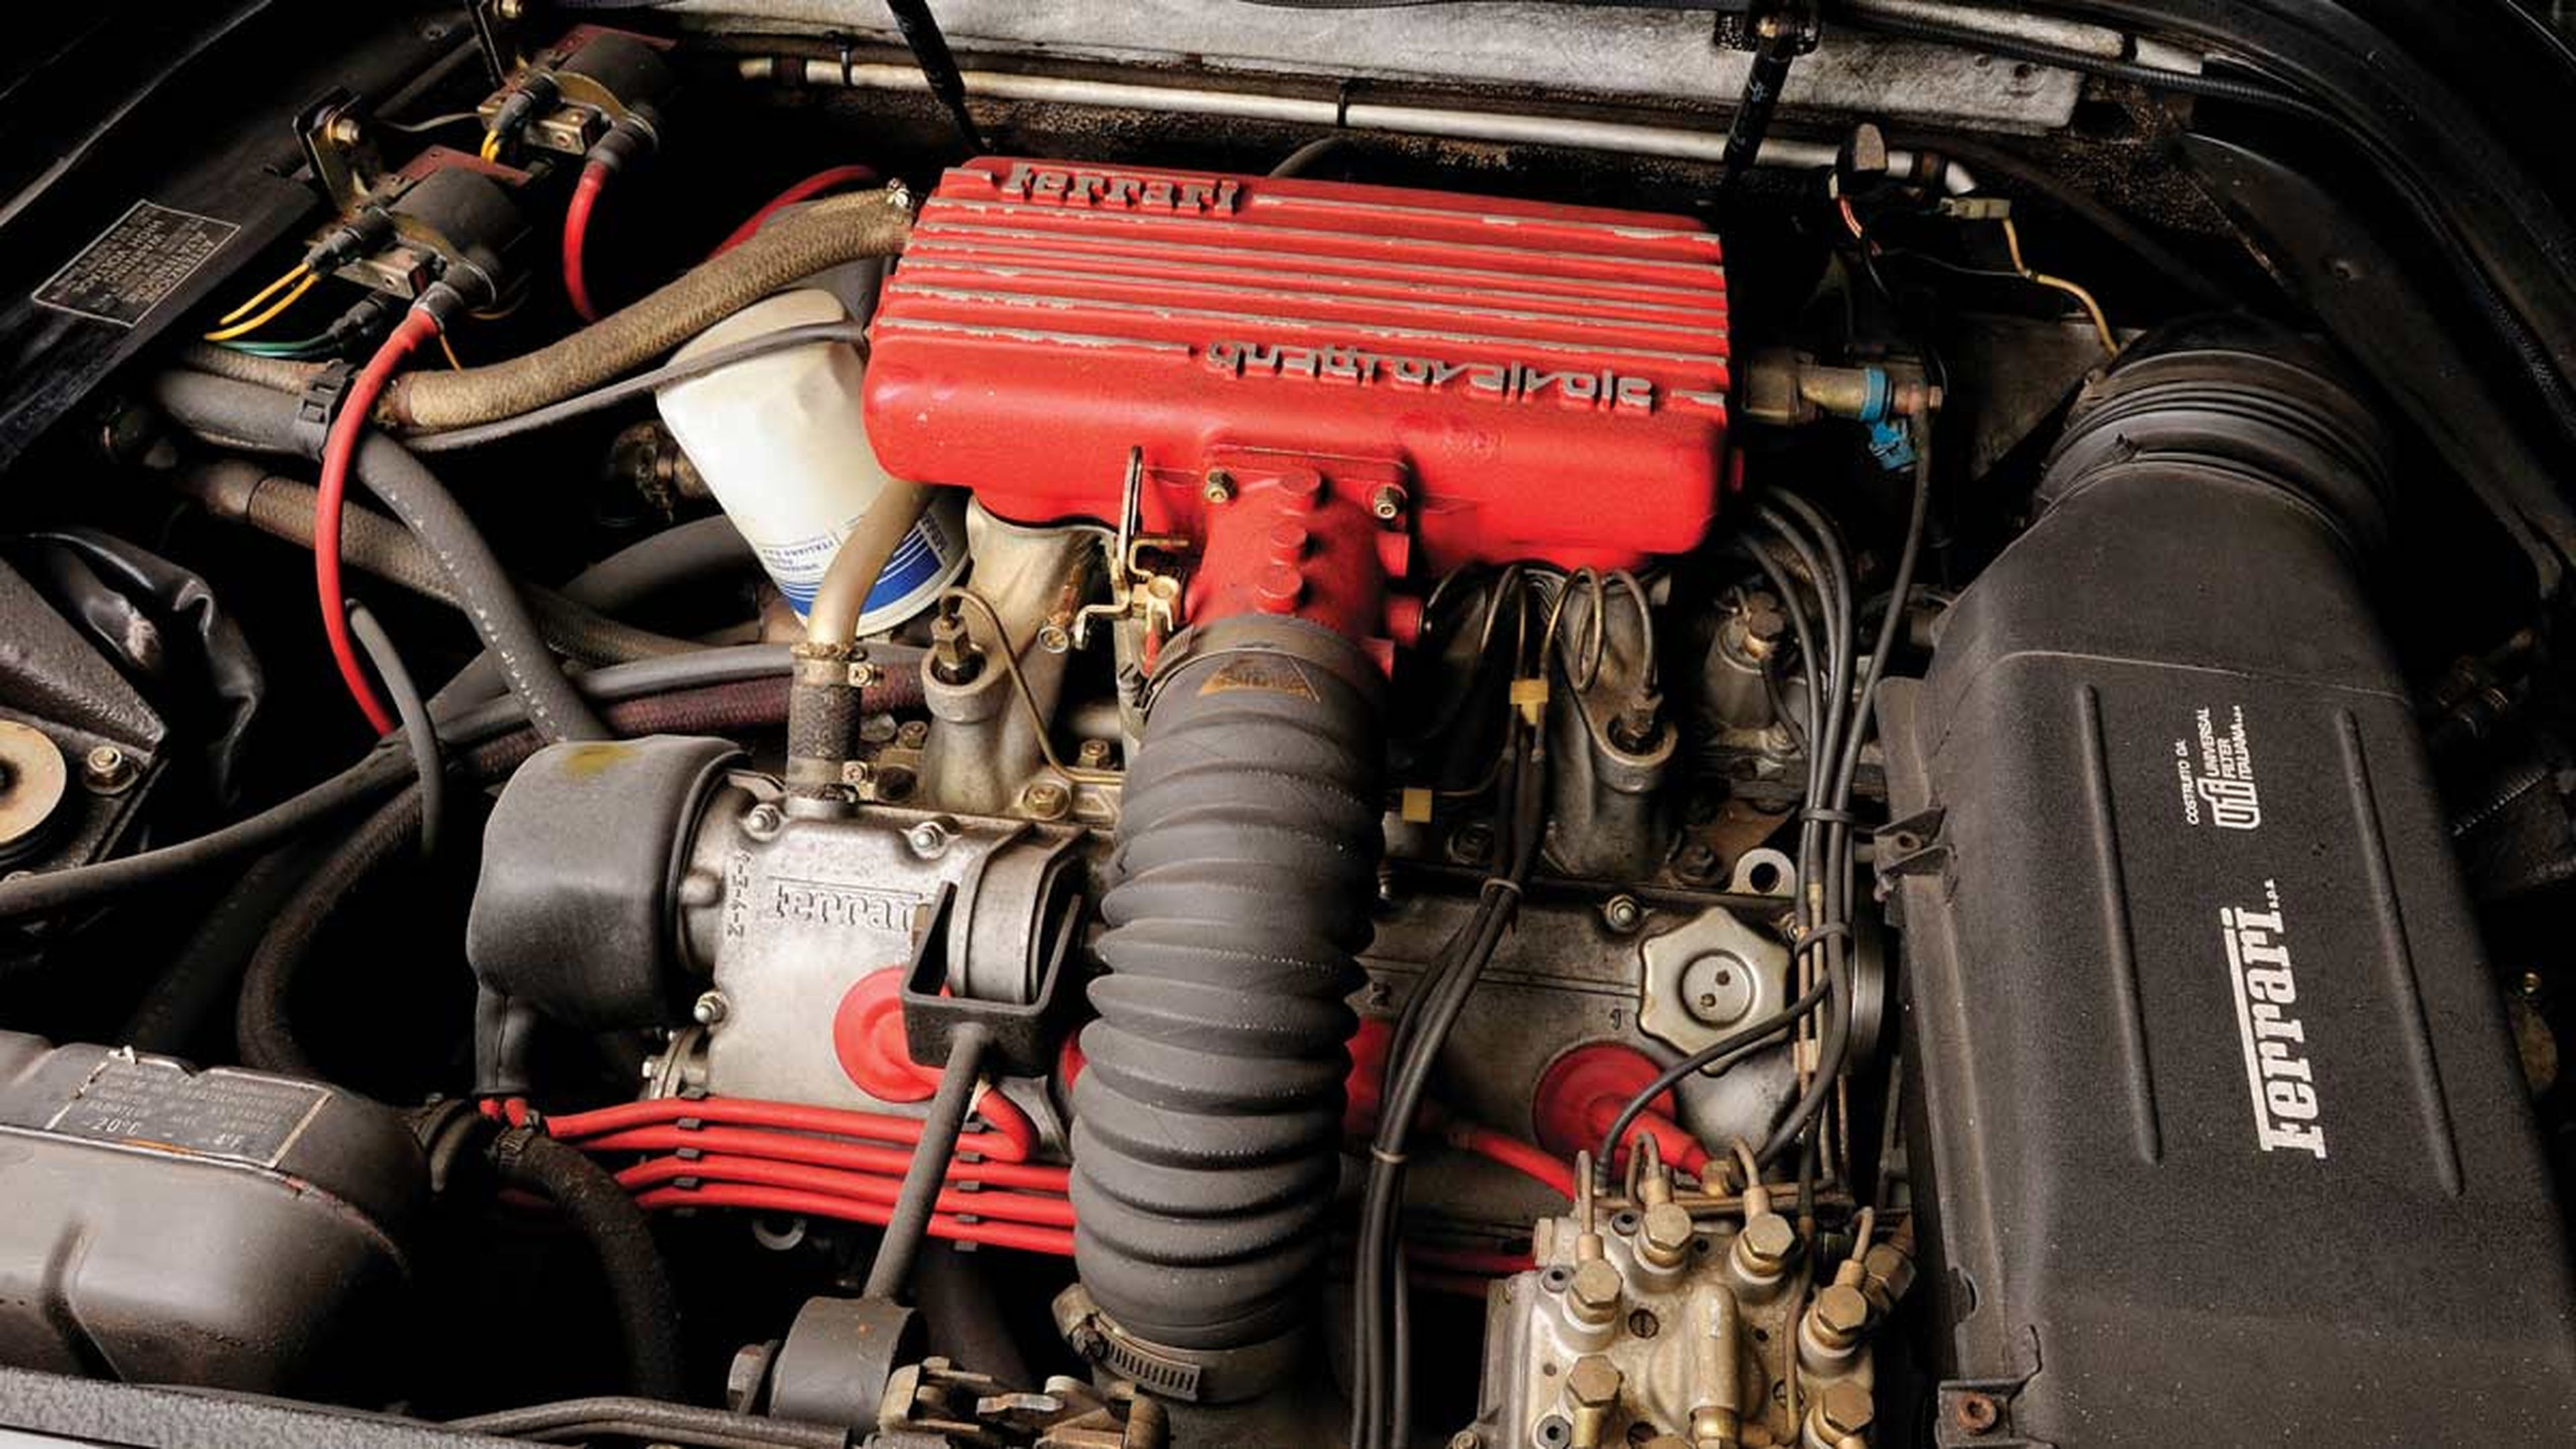 Ferrari Mondial motor